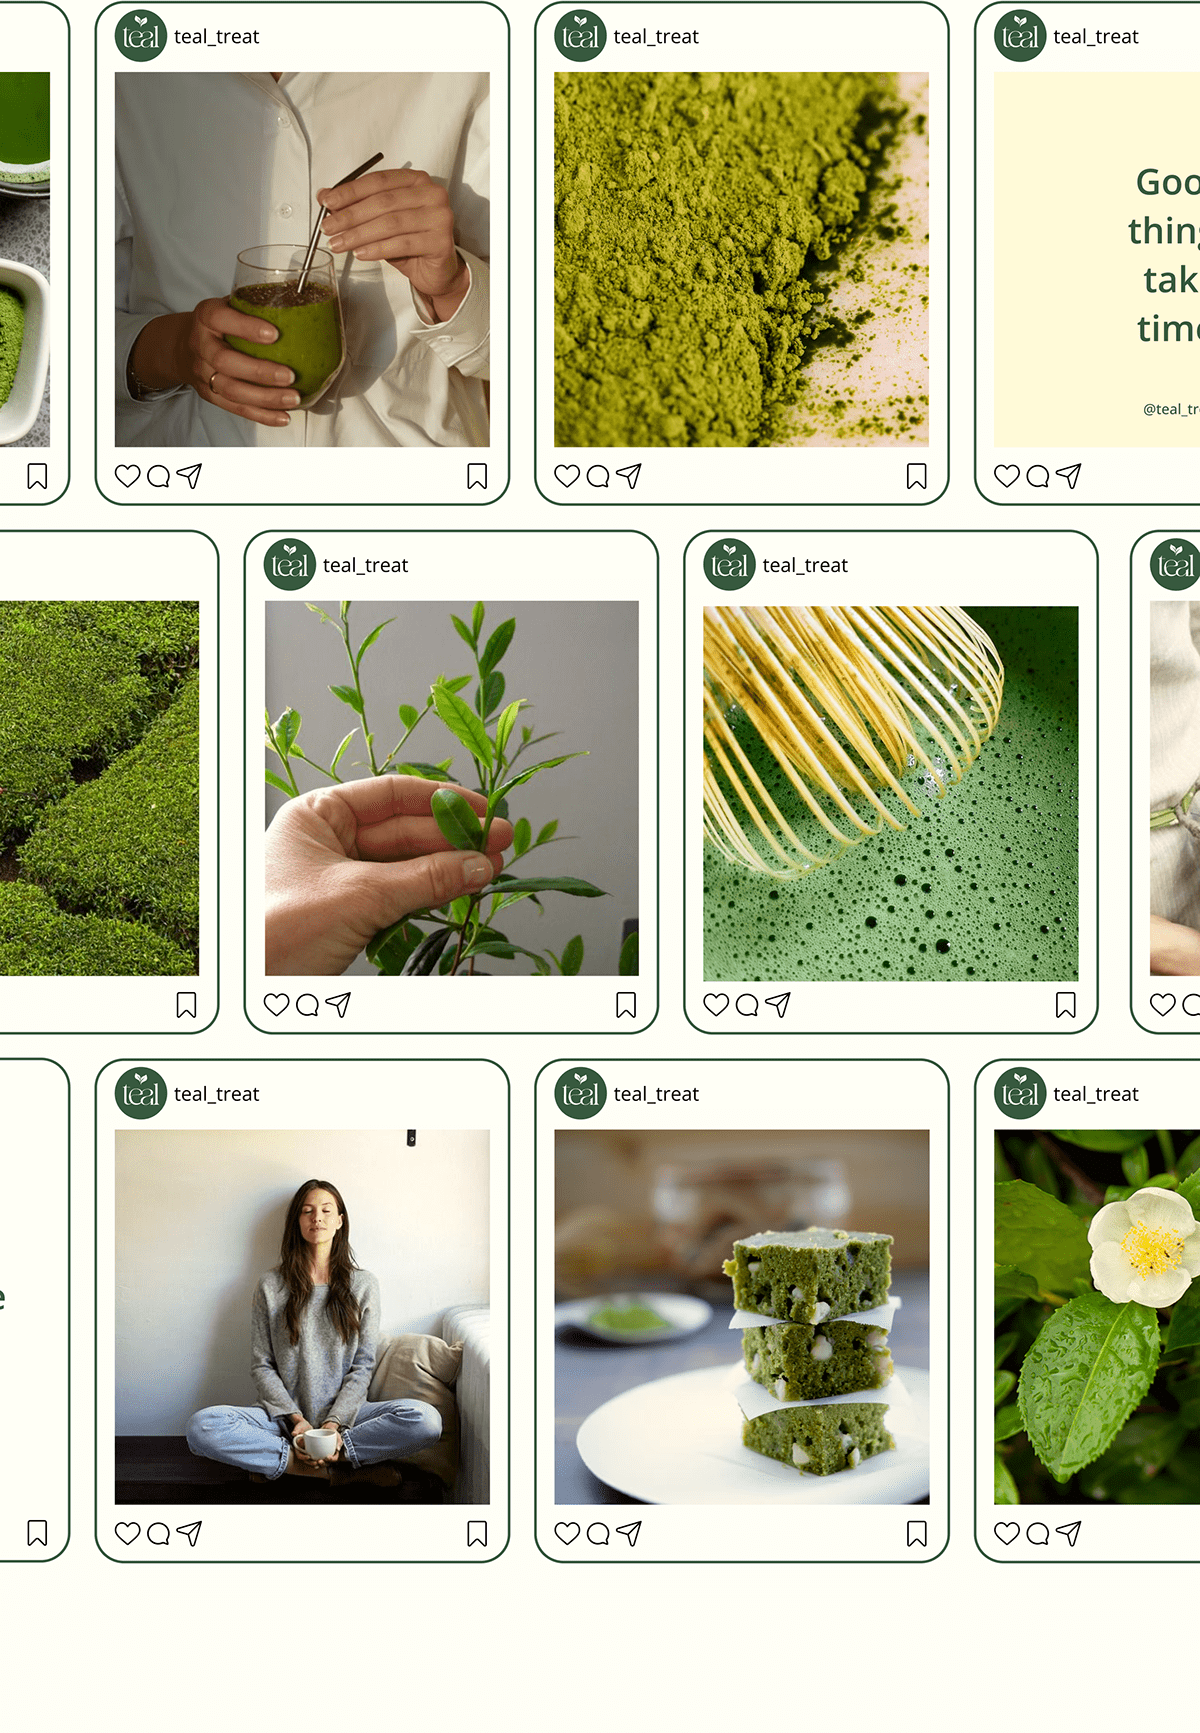 green green tea Logo Design matcha Packaging packaging design Social Media Design Sustainability tea